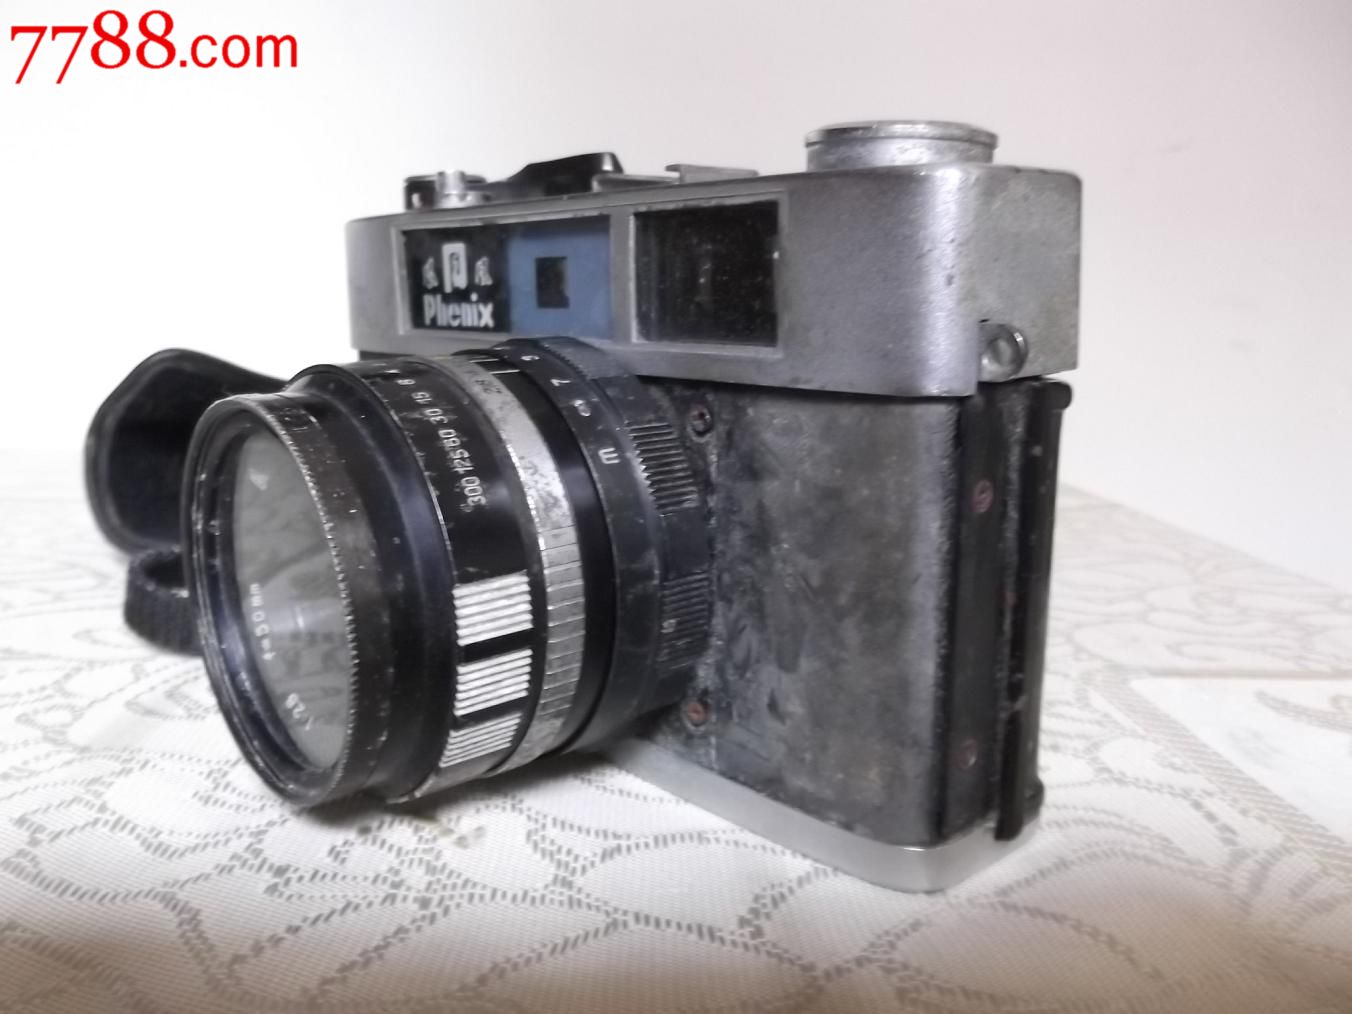 凤凰205-A型胶卷照相机,编号9171157;老式相